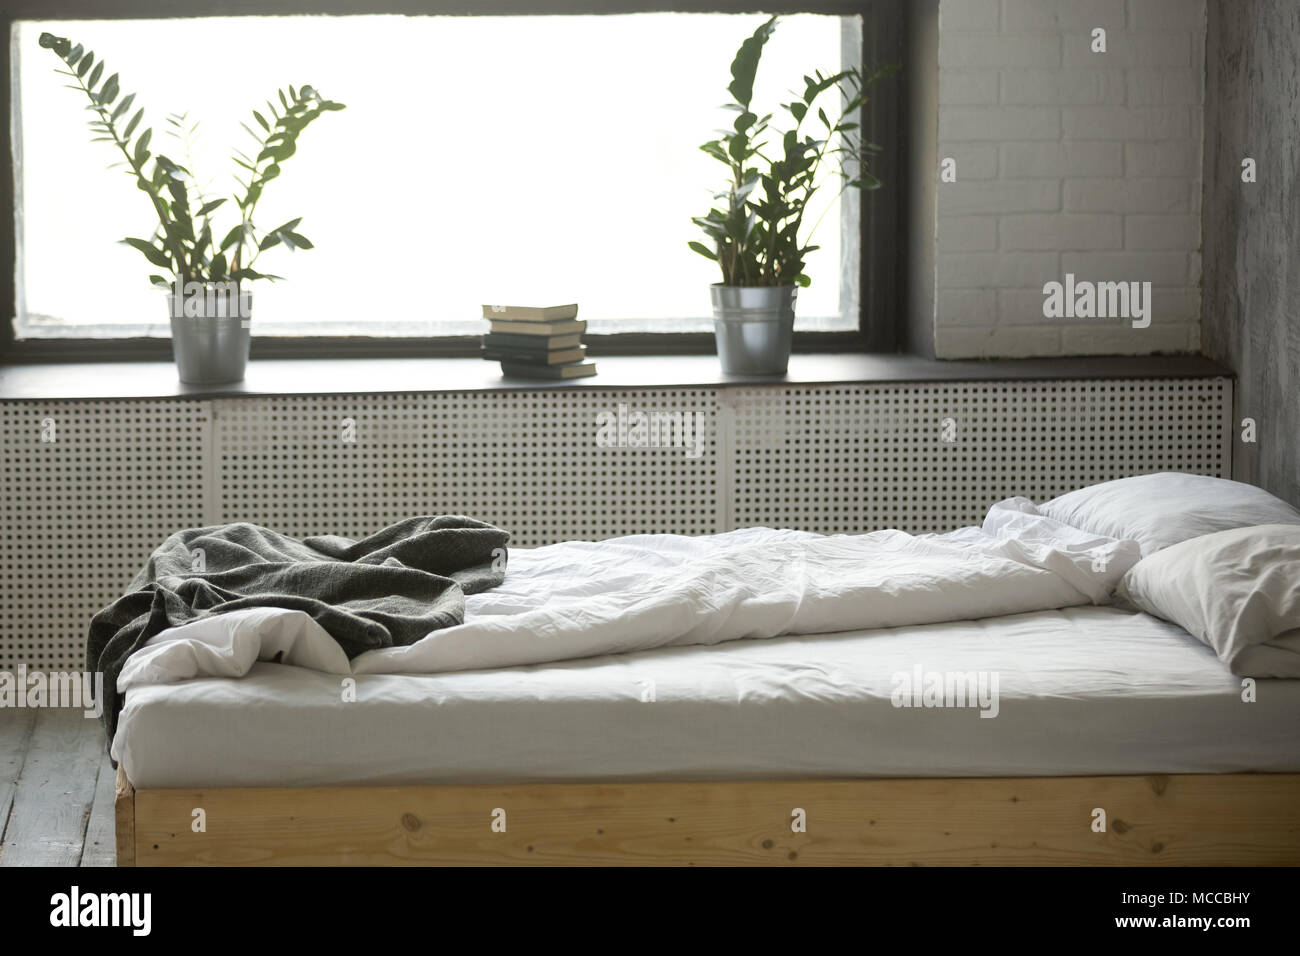 Se deshacen desordenada cama doble para dos personas con ropa de cama de  lino de hoja arrugada cerca de la ventana en modernas y confortables  habitaciones con un diseño interior gris nadie,